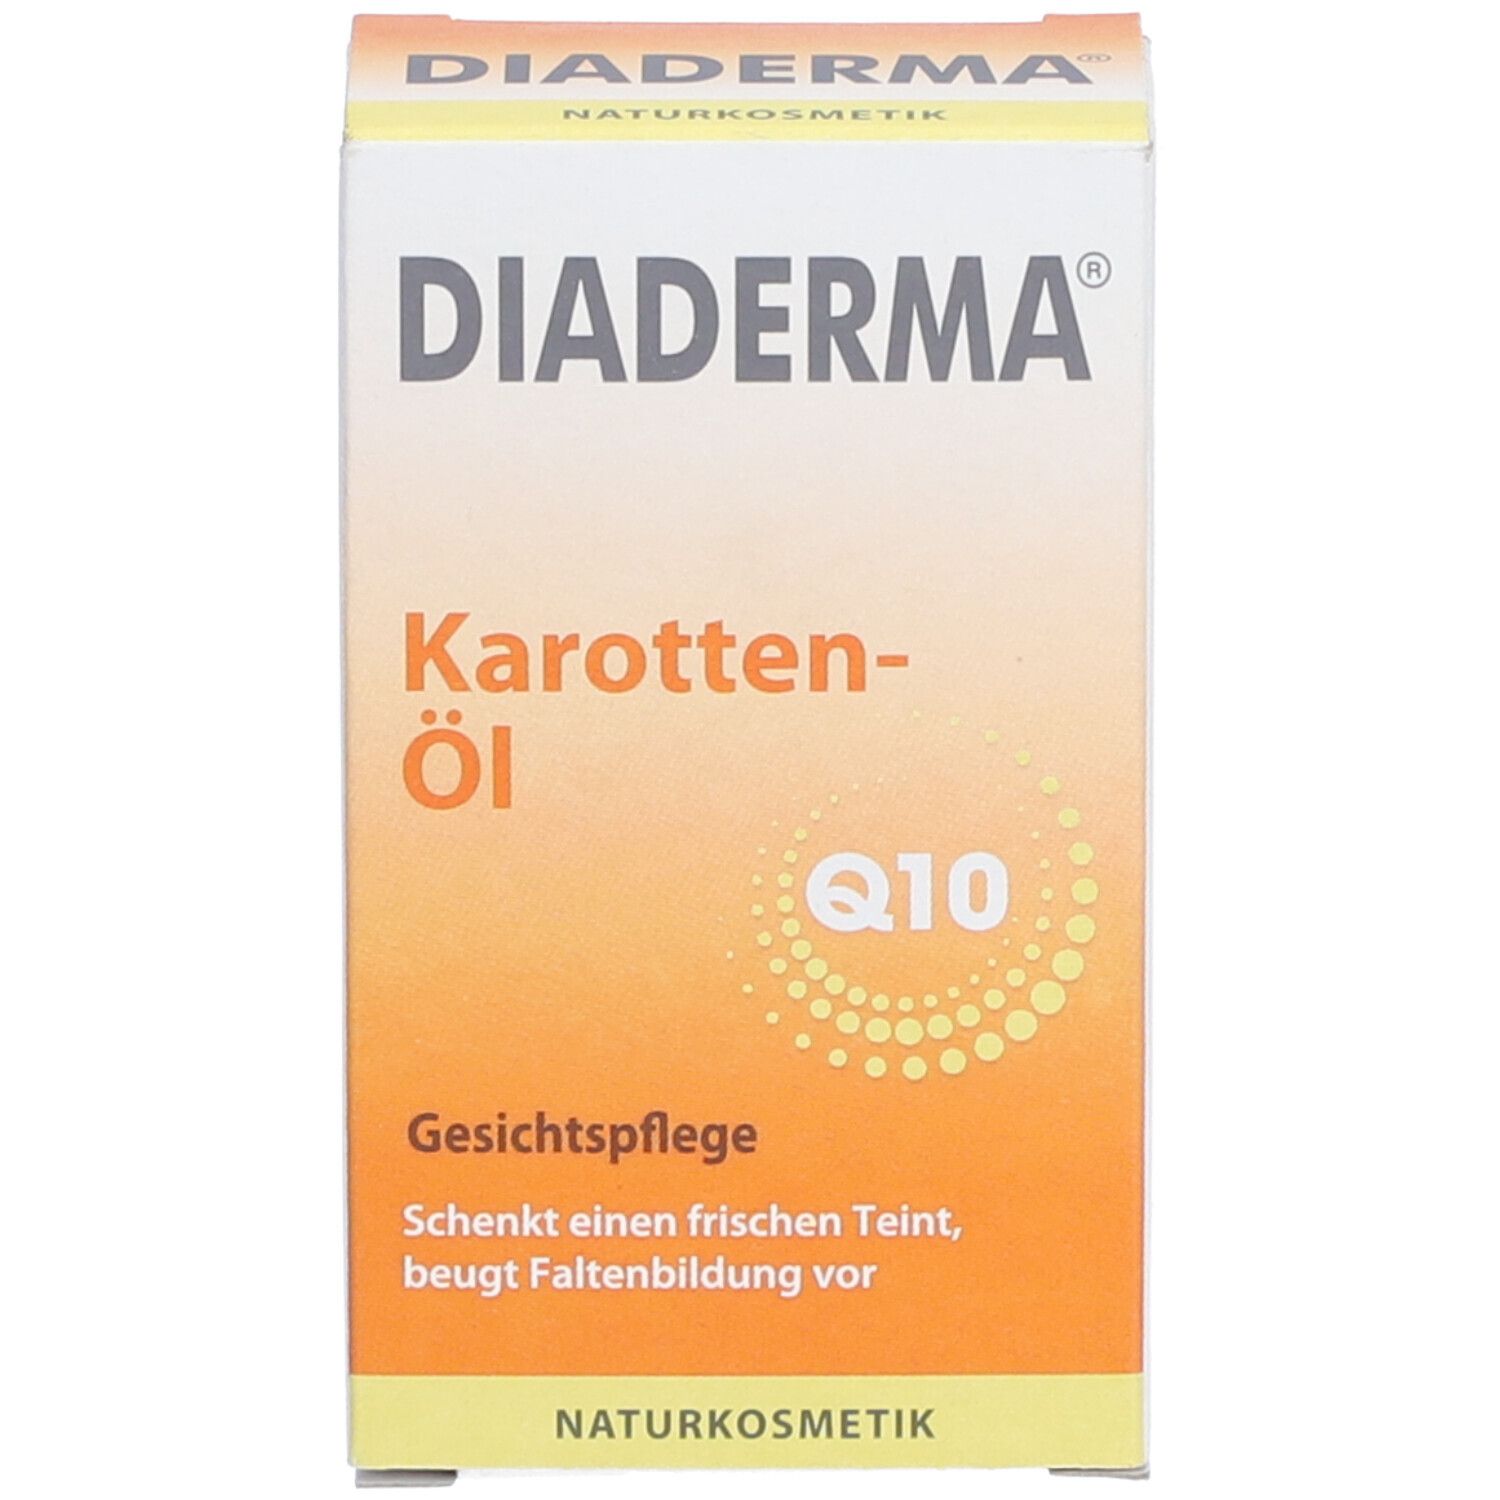 DIADERMA® Karotten-Öl Q10